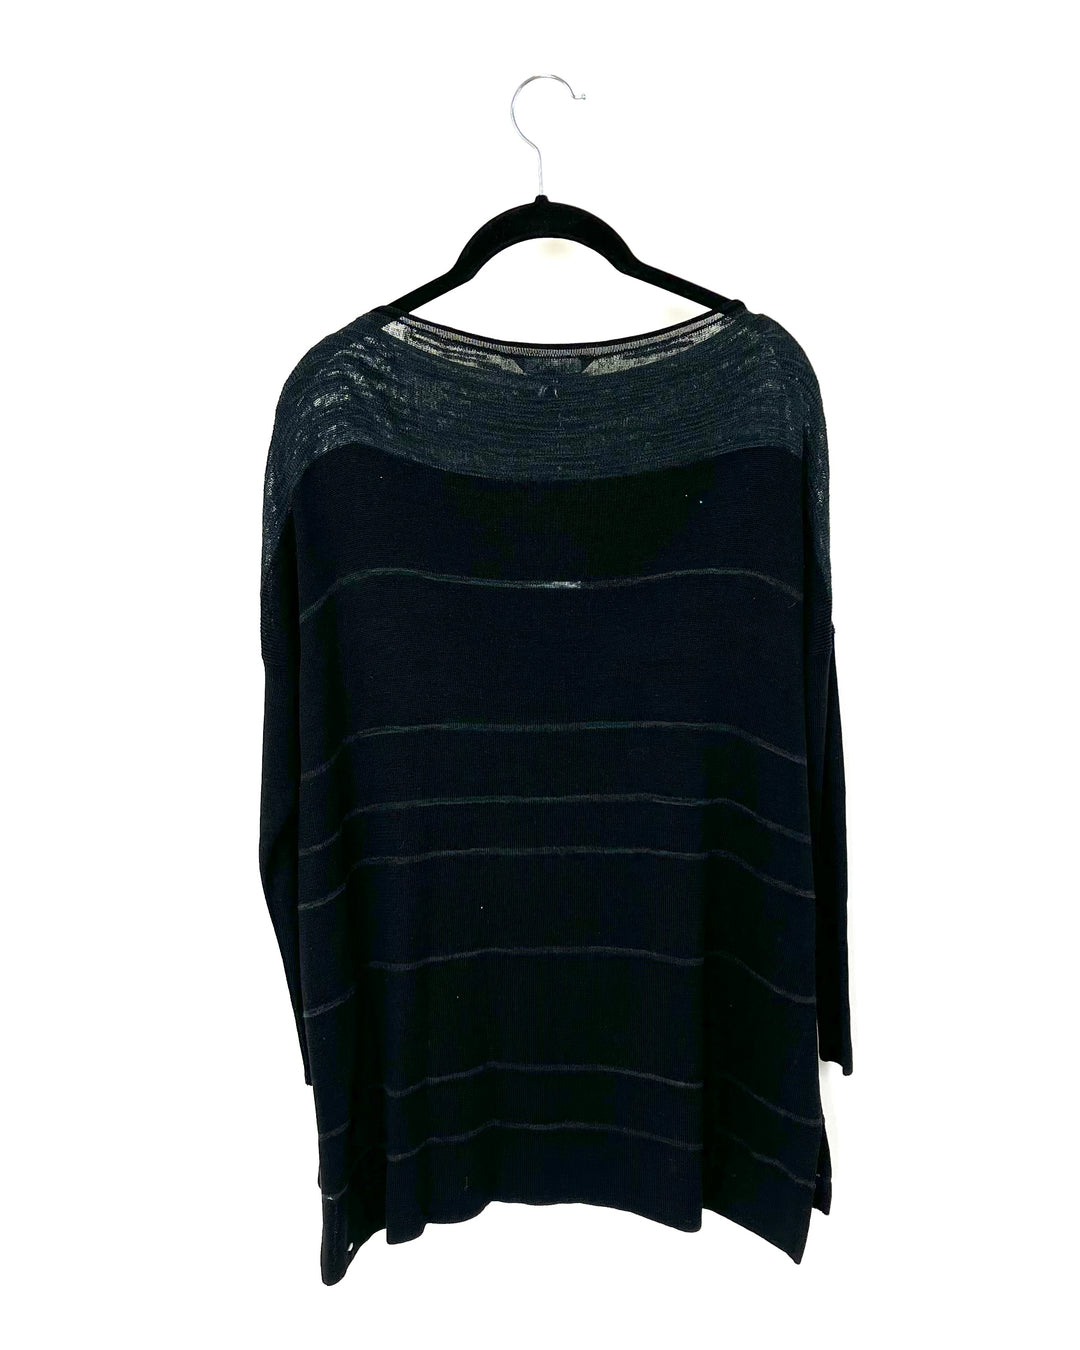 Black Knit Tunic - Size 0